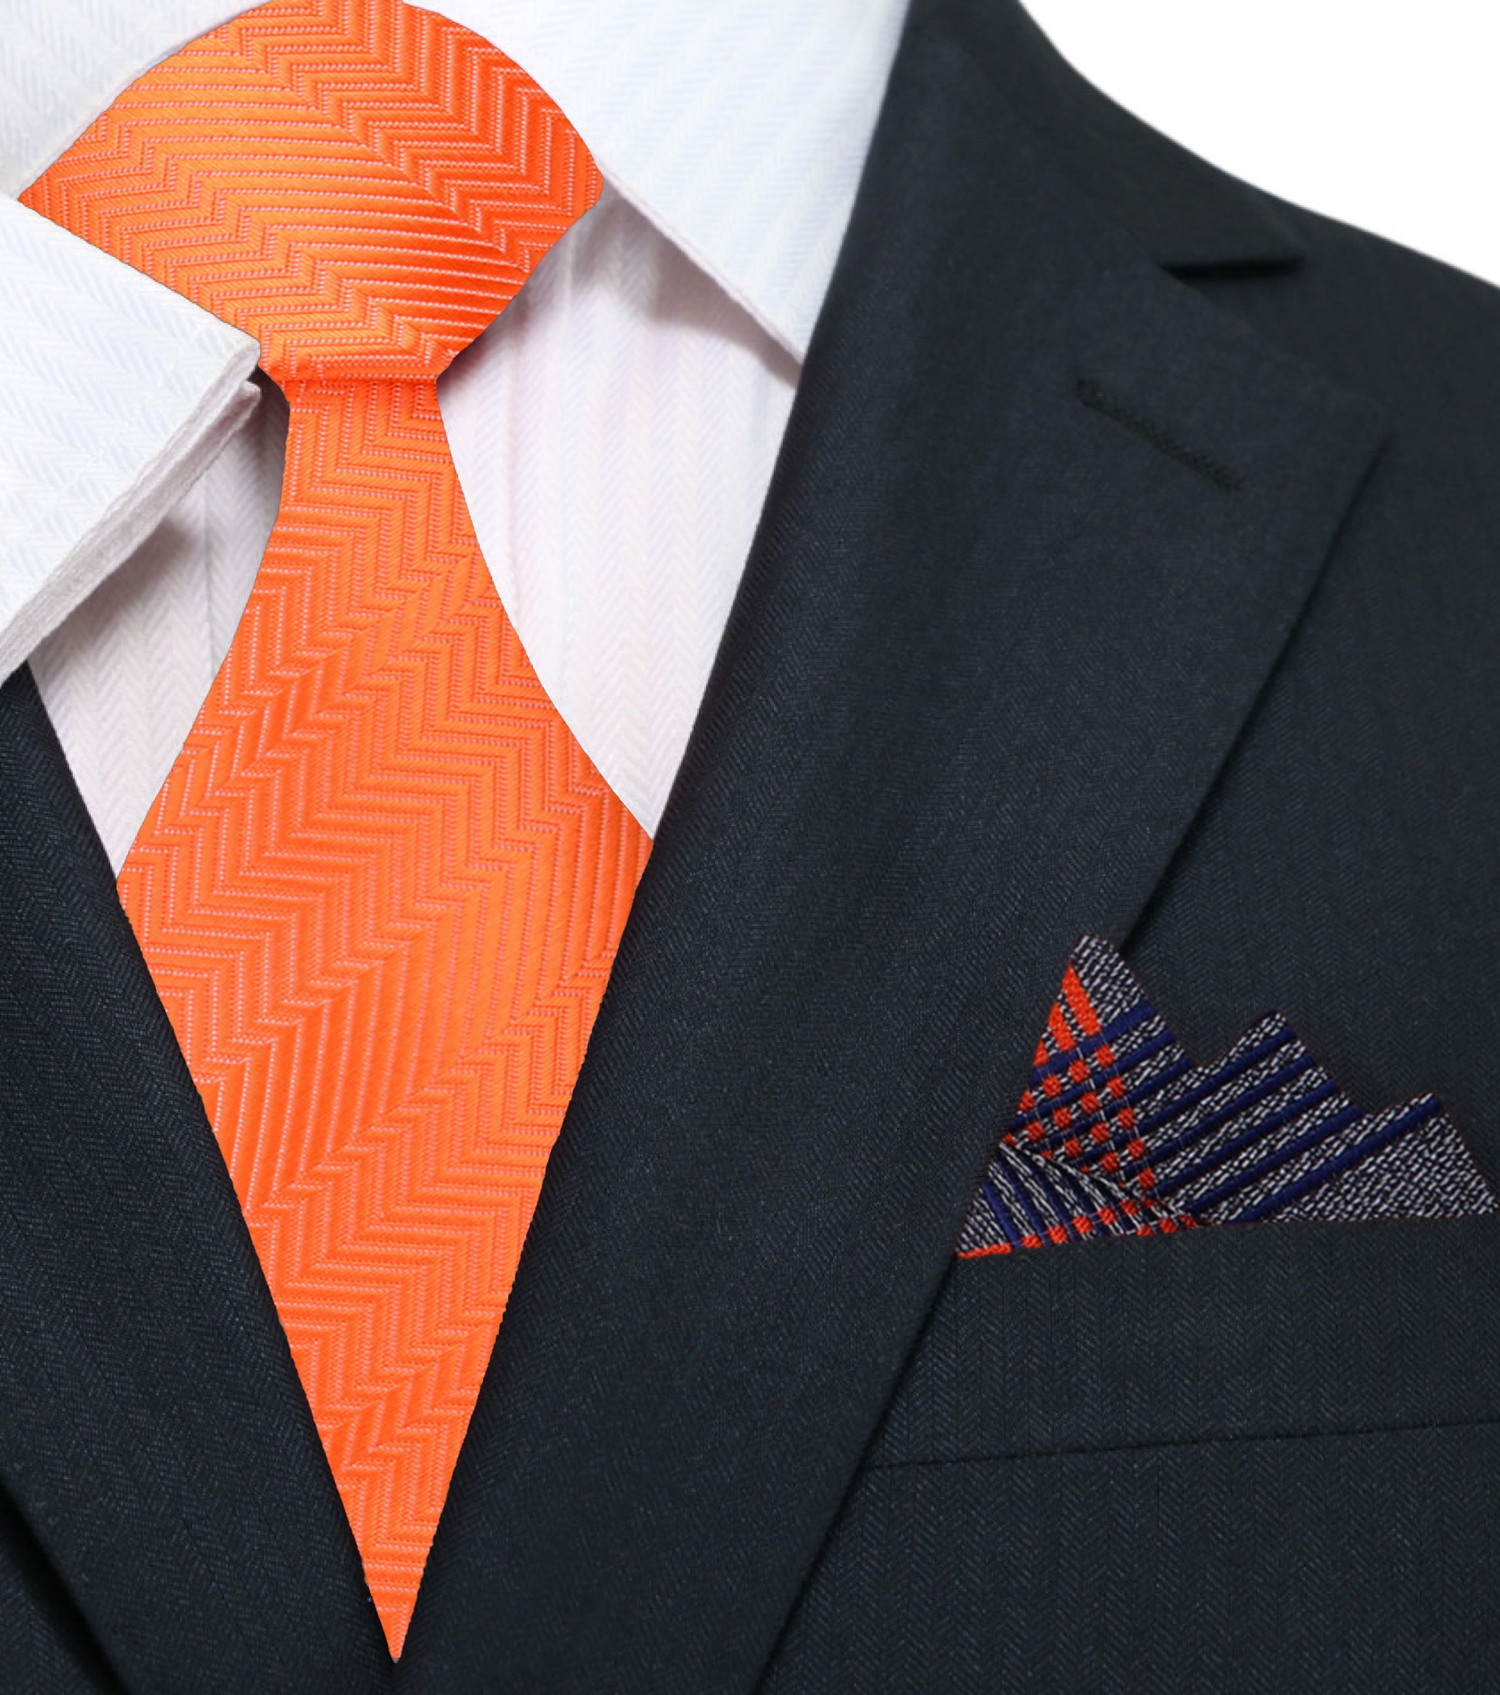 Solid Orange Necktie and Accenting Grey, Blue, Orange Plaid Square